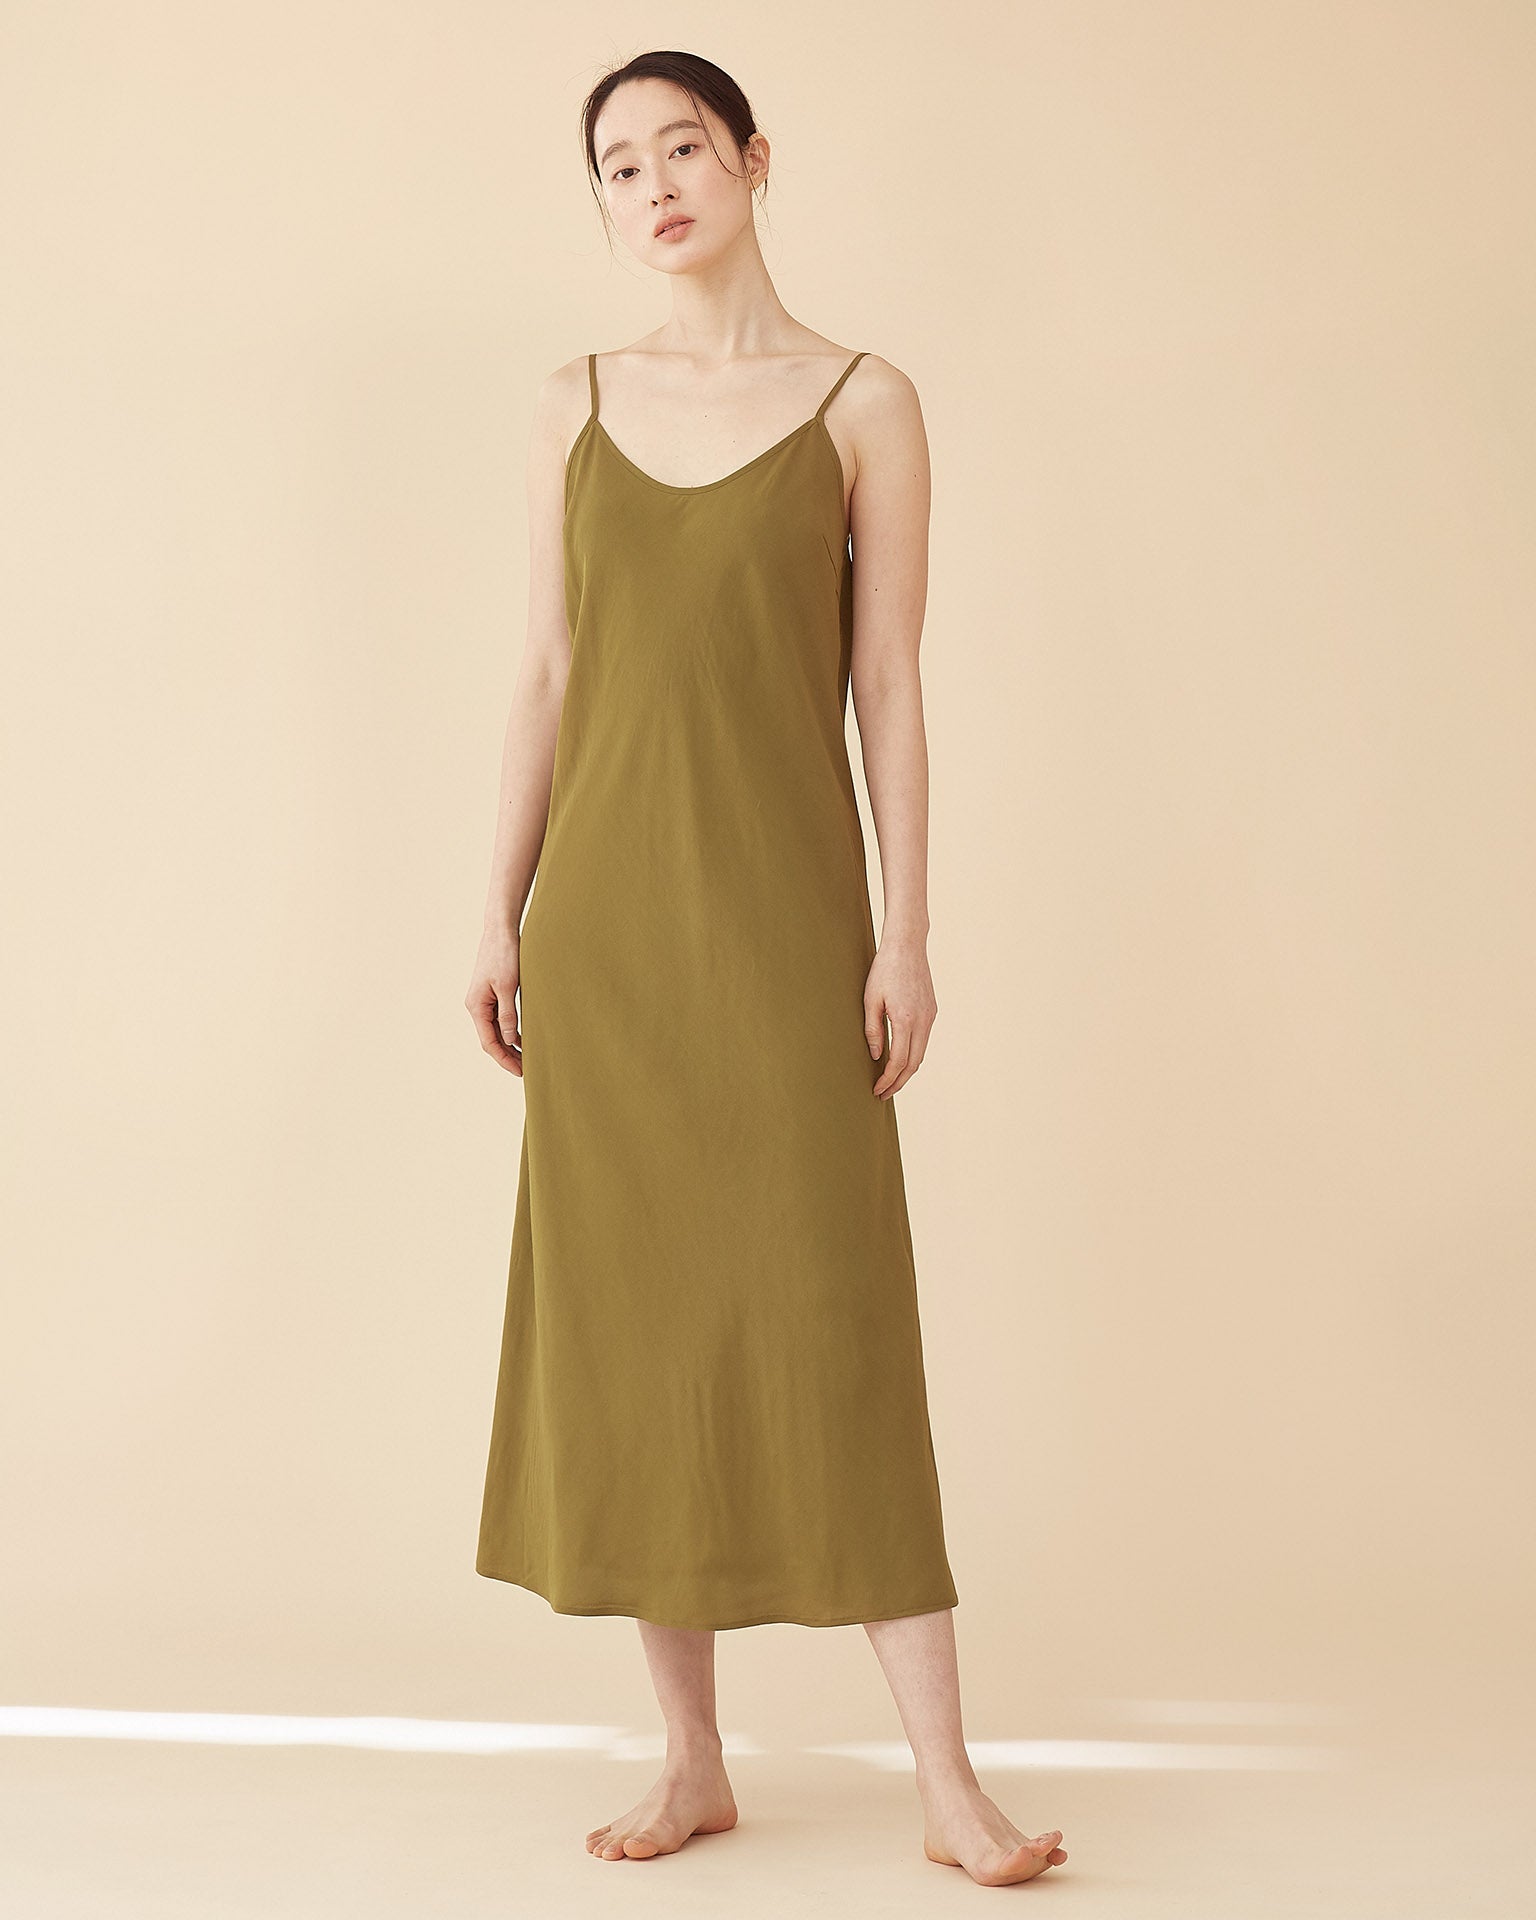 green long slip dress